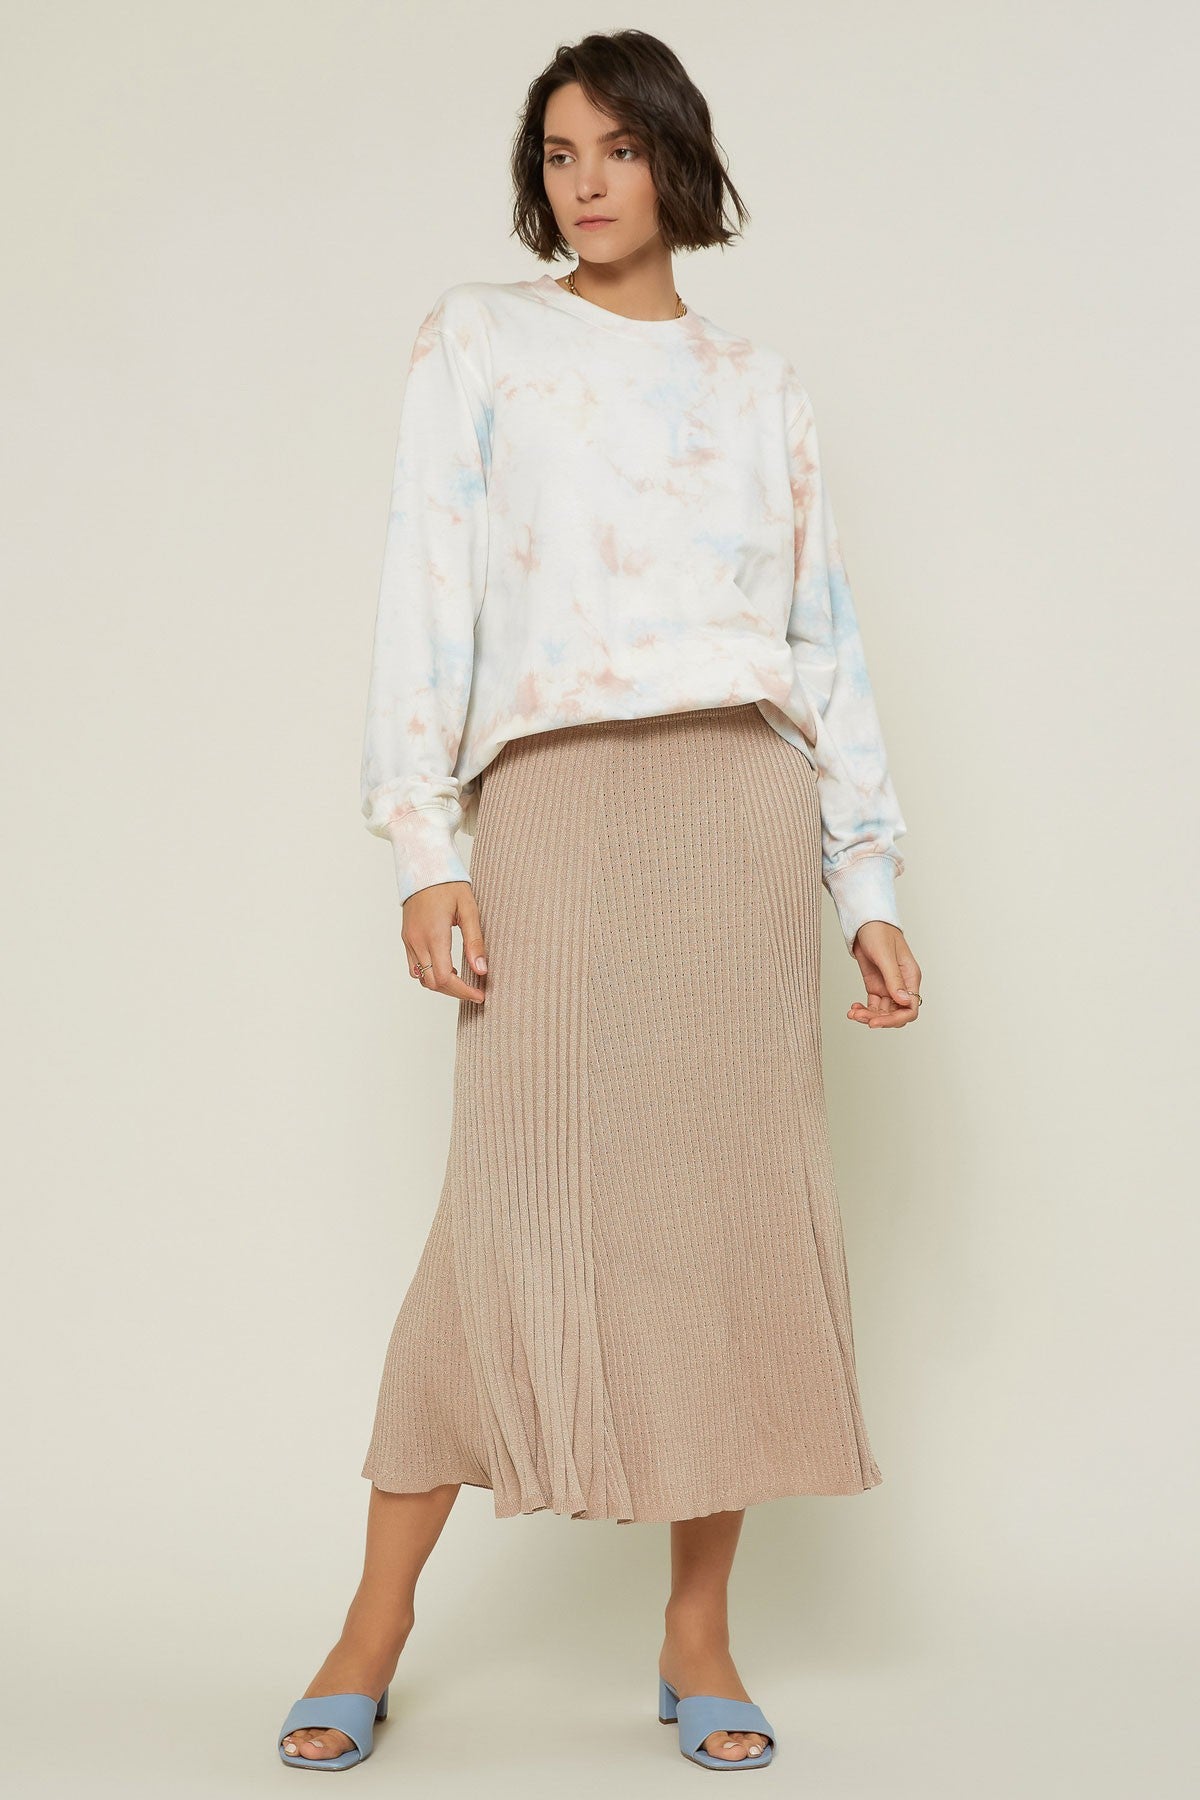 Midi Length Sweater Skirt